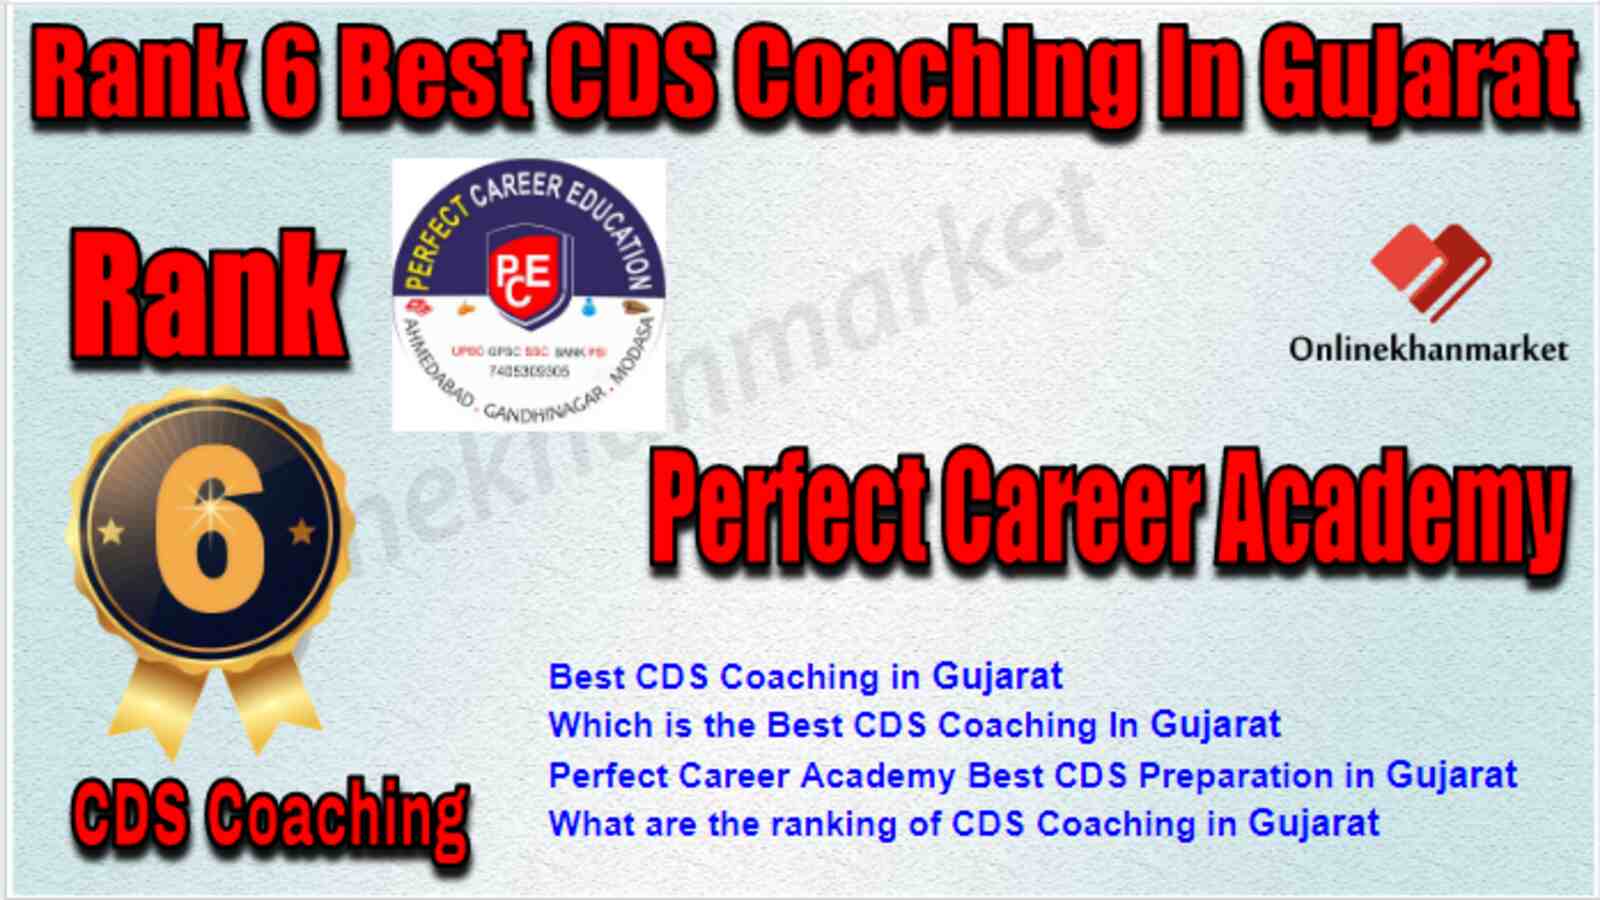 Rank 6 Best CDS Coaching in Gujarat